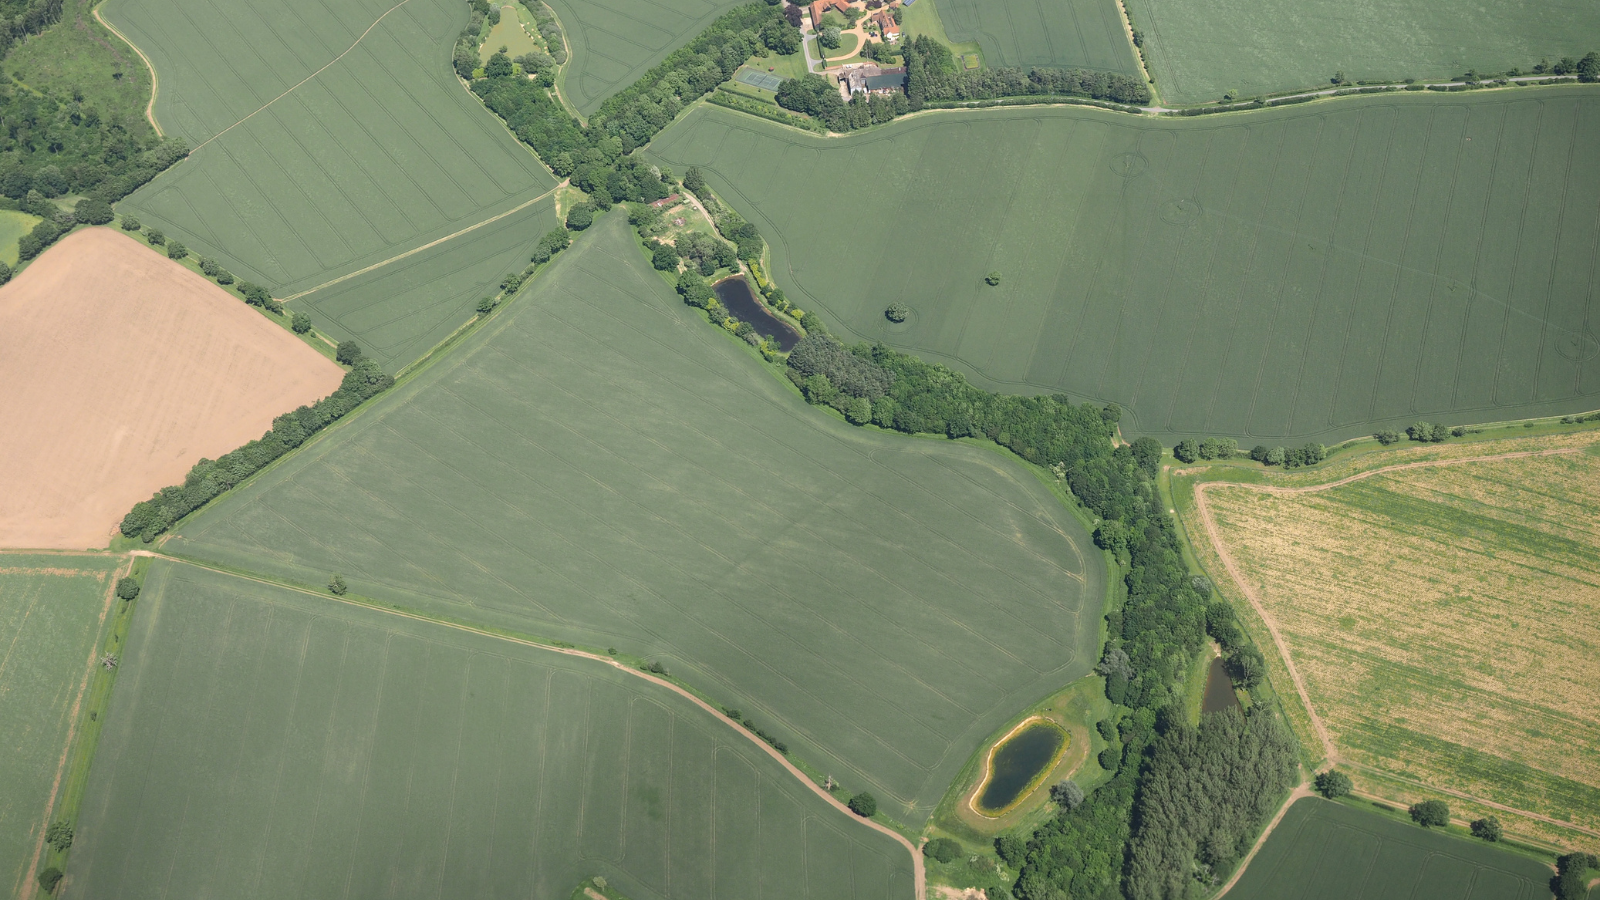  Birds-eye view of green fields in Essex.